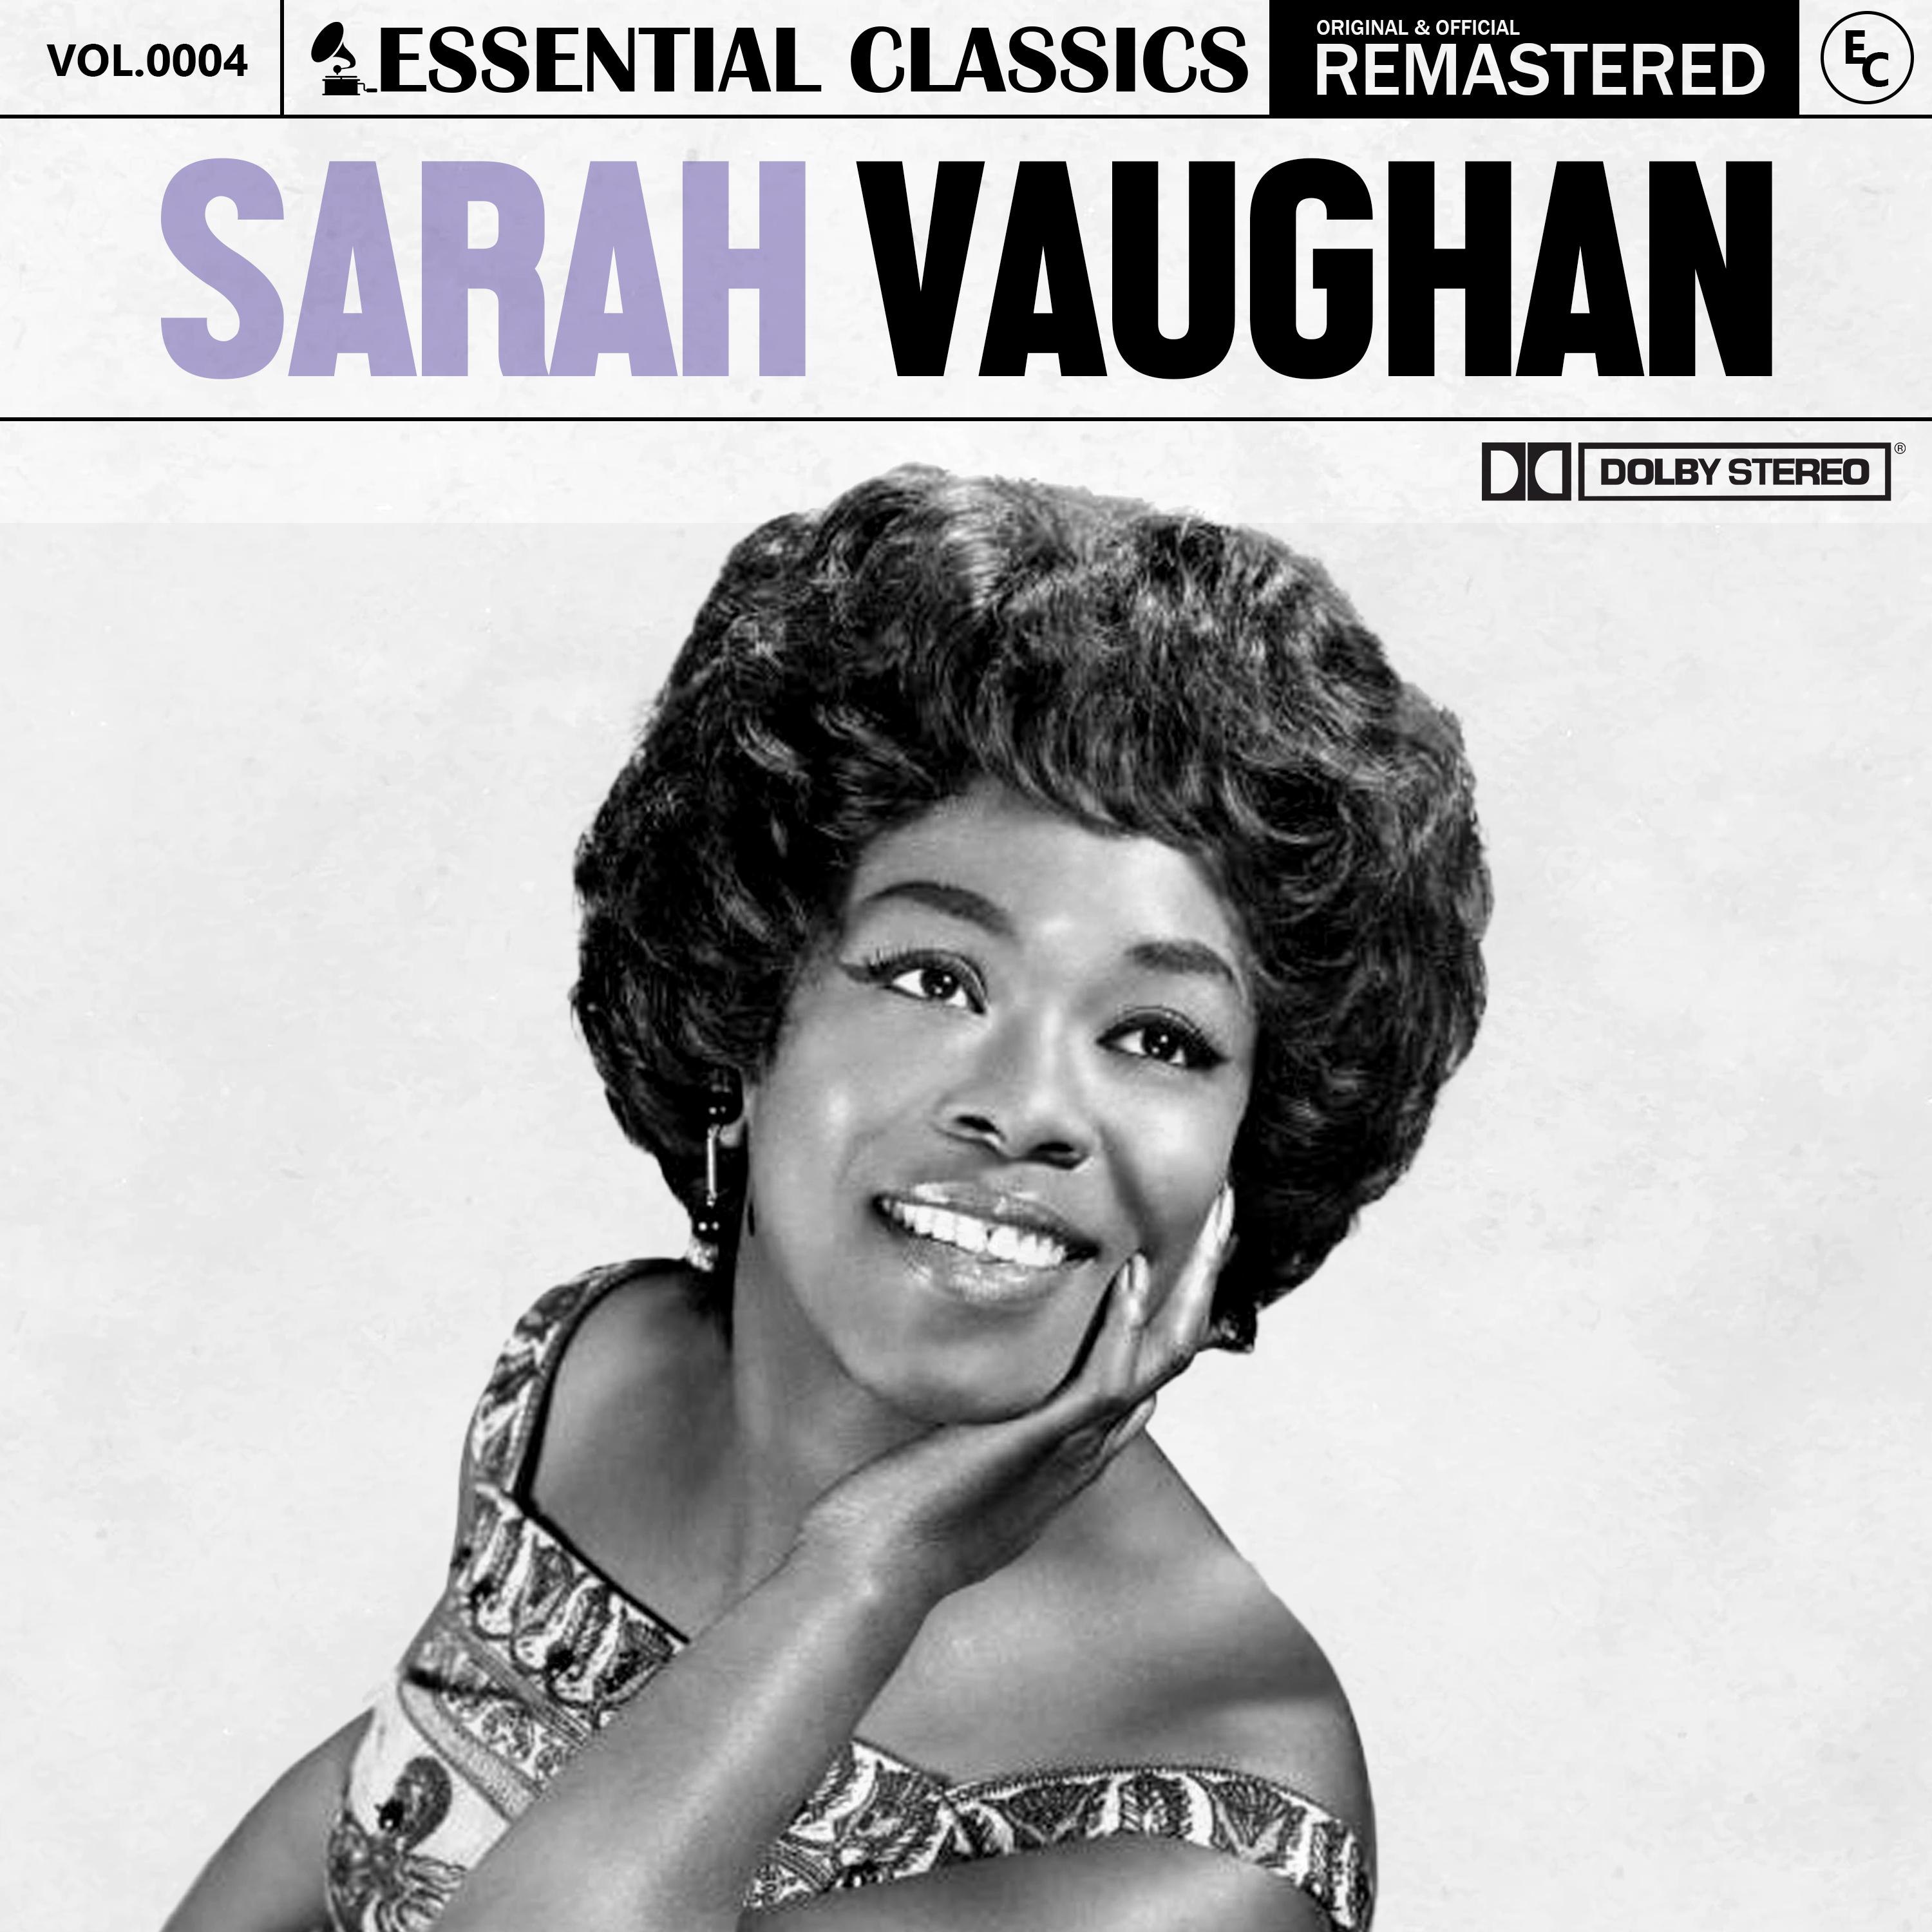 Sarah Vaughan - Over the Rainbow